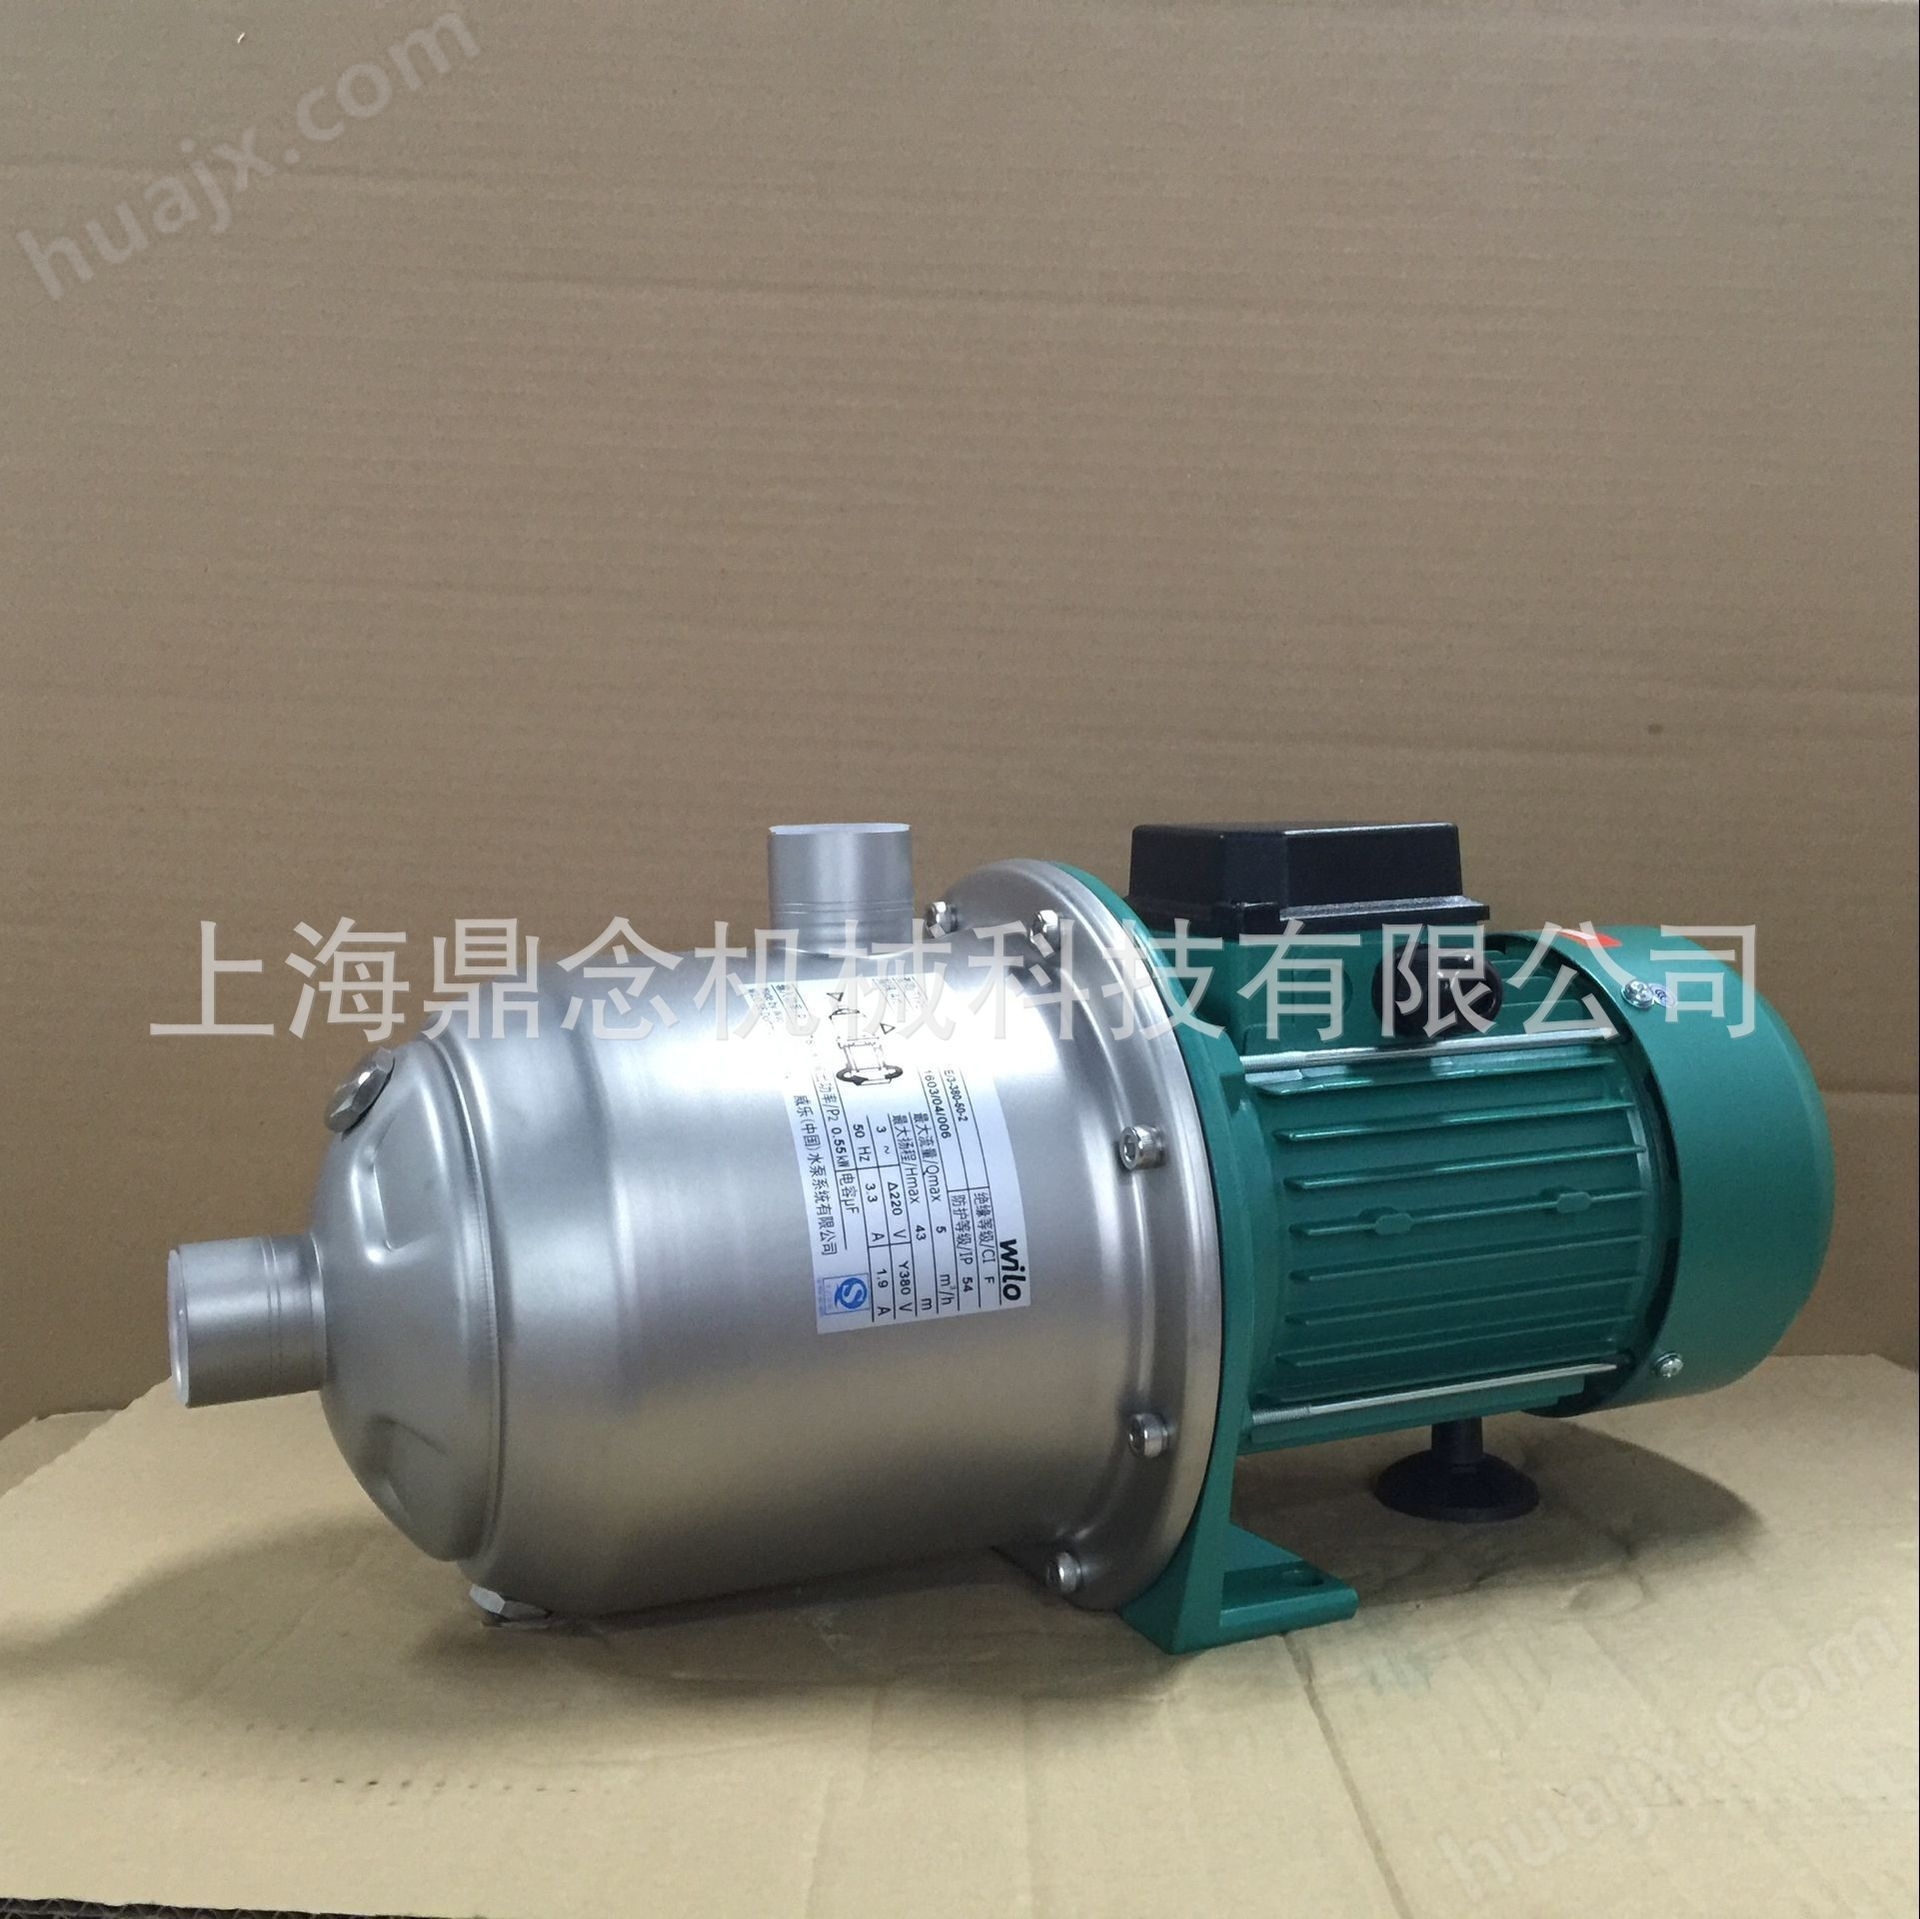 威乐水泵MHI405小区用水不锈钢离心增压泵